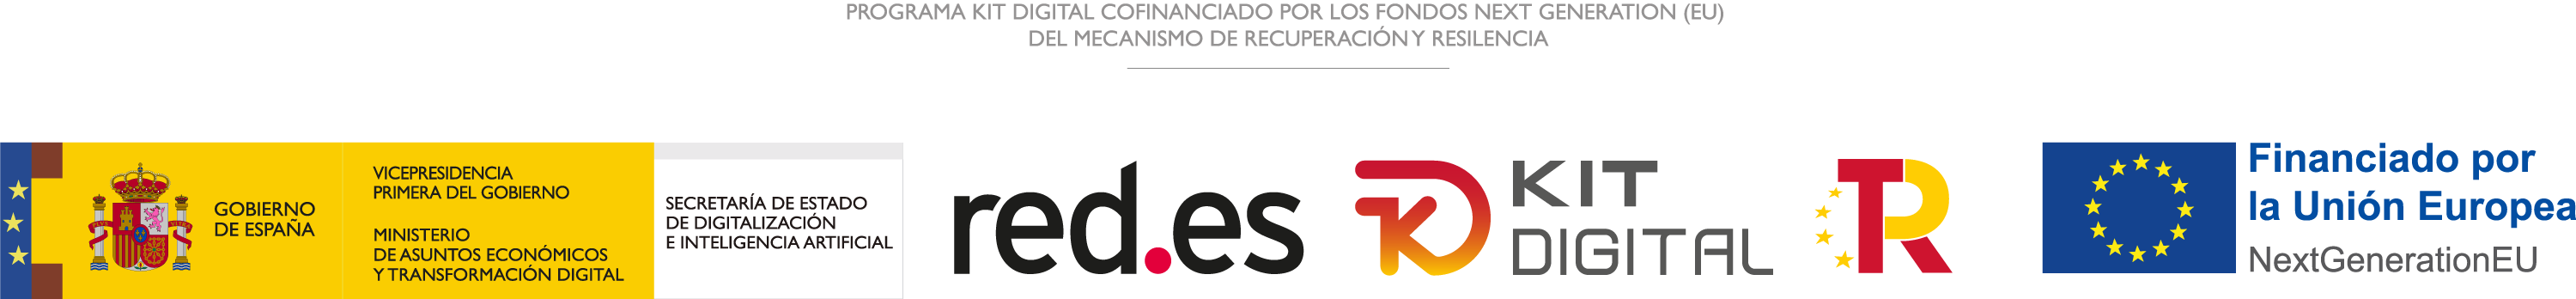 Programa Kit Digital cofinanciado por los fondo Next Generation (EU) del mecanismo de recuperación y resilencia